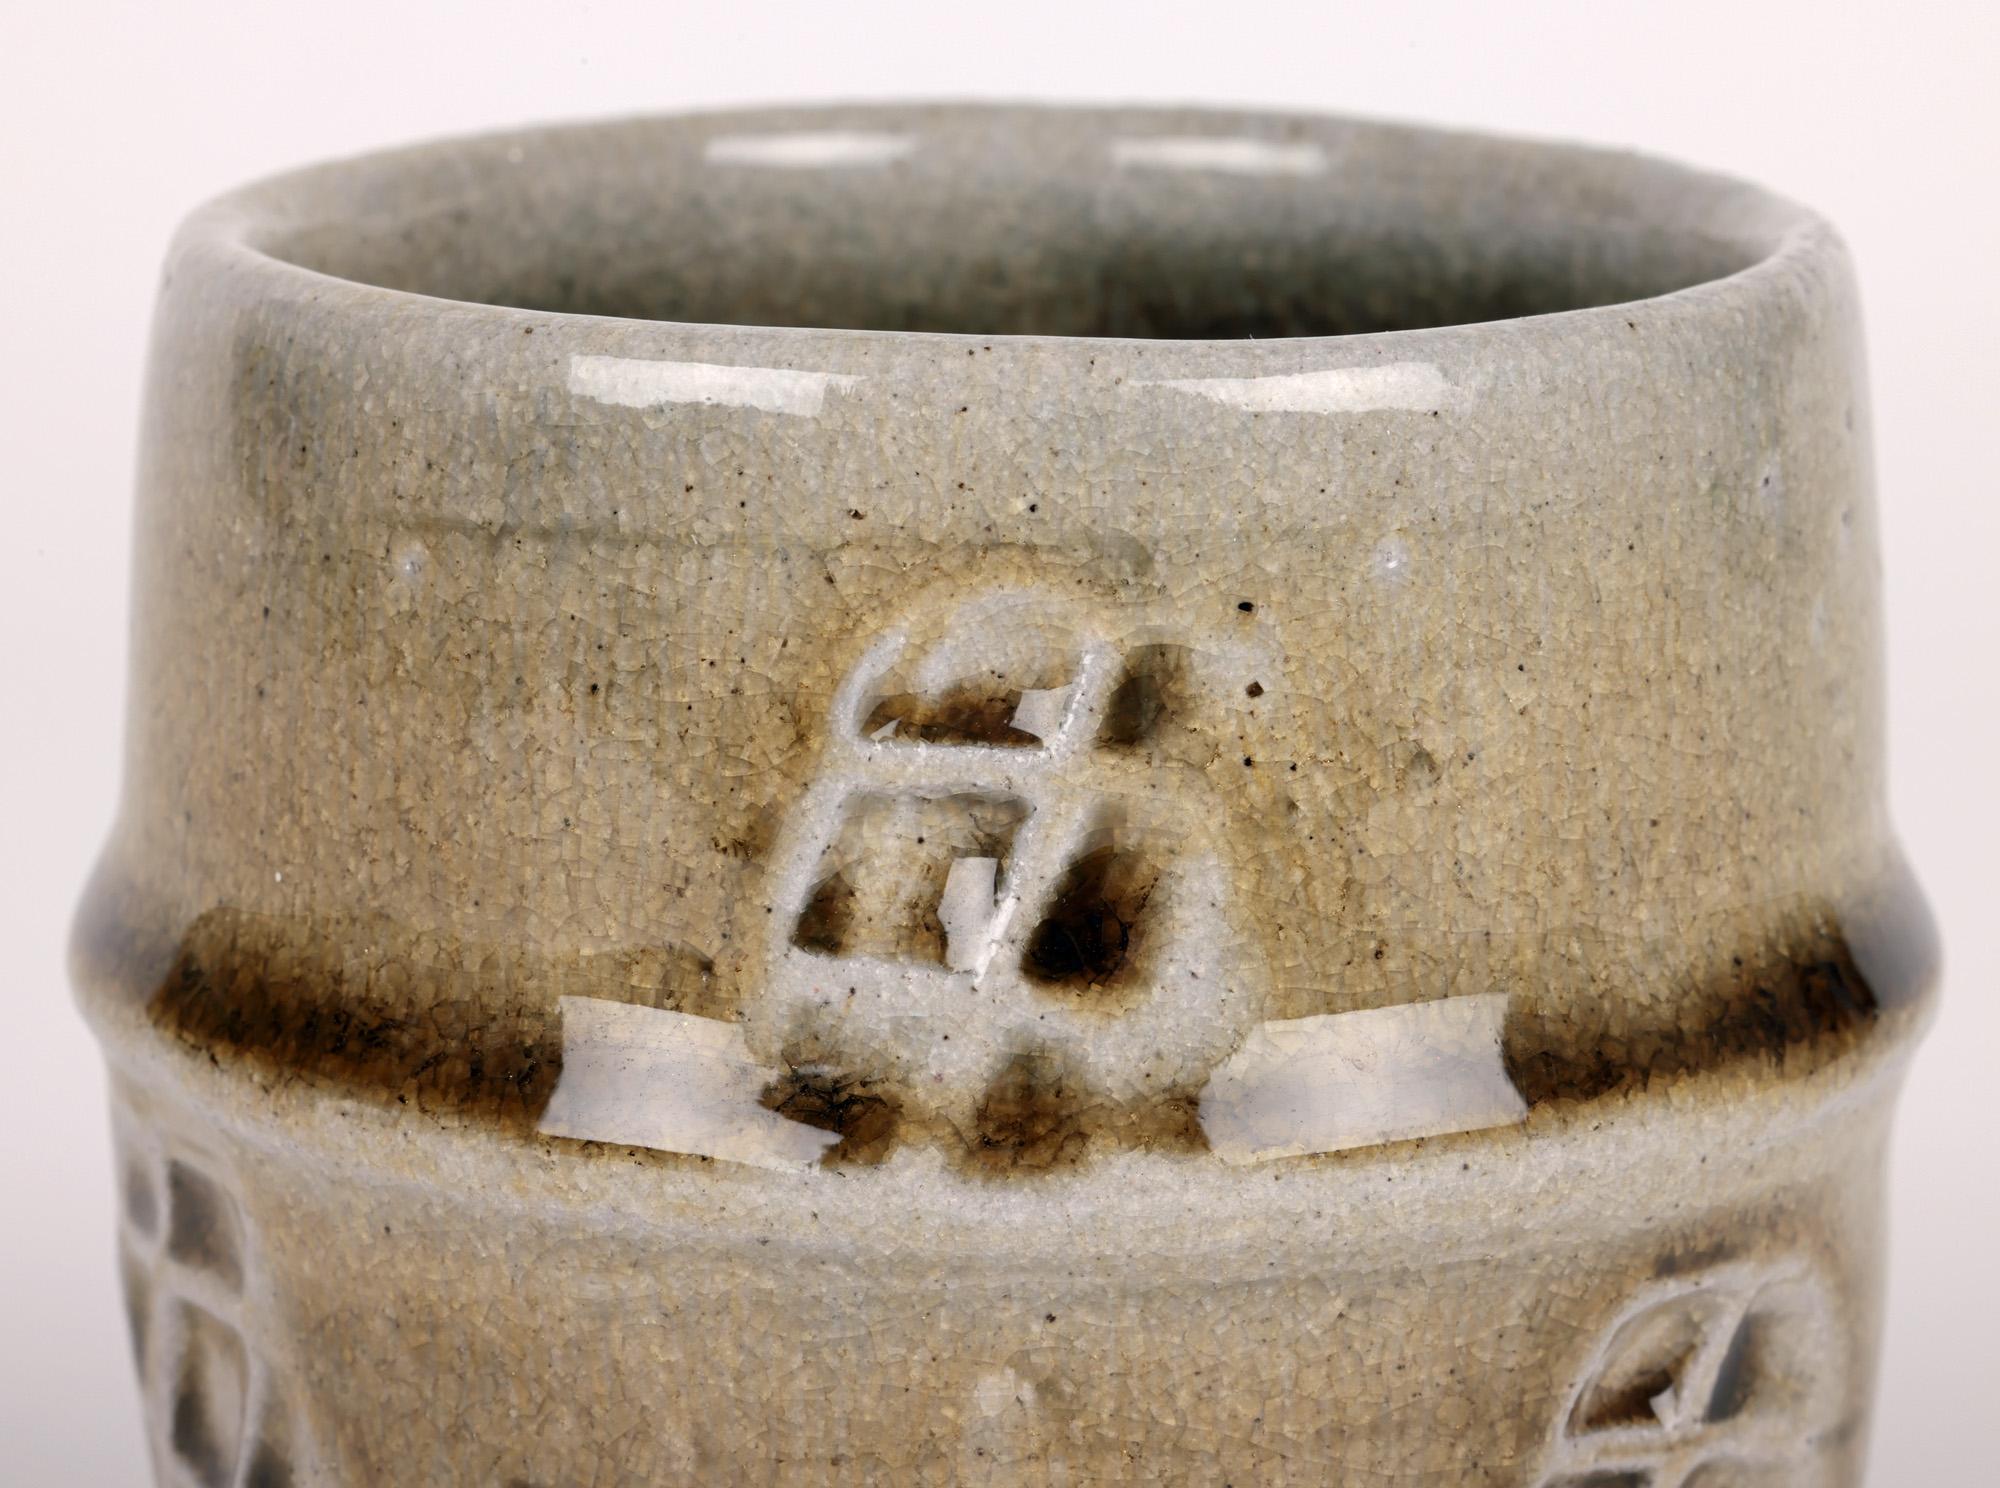 Une élégante poterie d'atelier en grès émaillé au sel de Marston Pottery, unomi du célèbre potier Philip (Phil) Rogers (britannique, né en 1951), datant de la fin du 20e siècle. L'unomi lourdement empoté repose sur un pied rond étroit avec une base